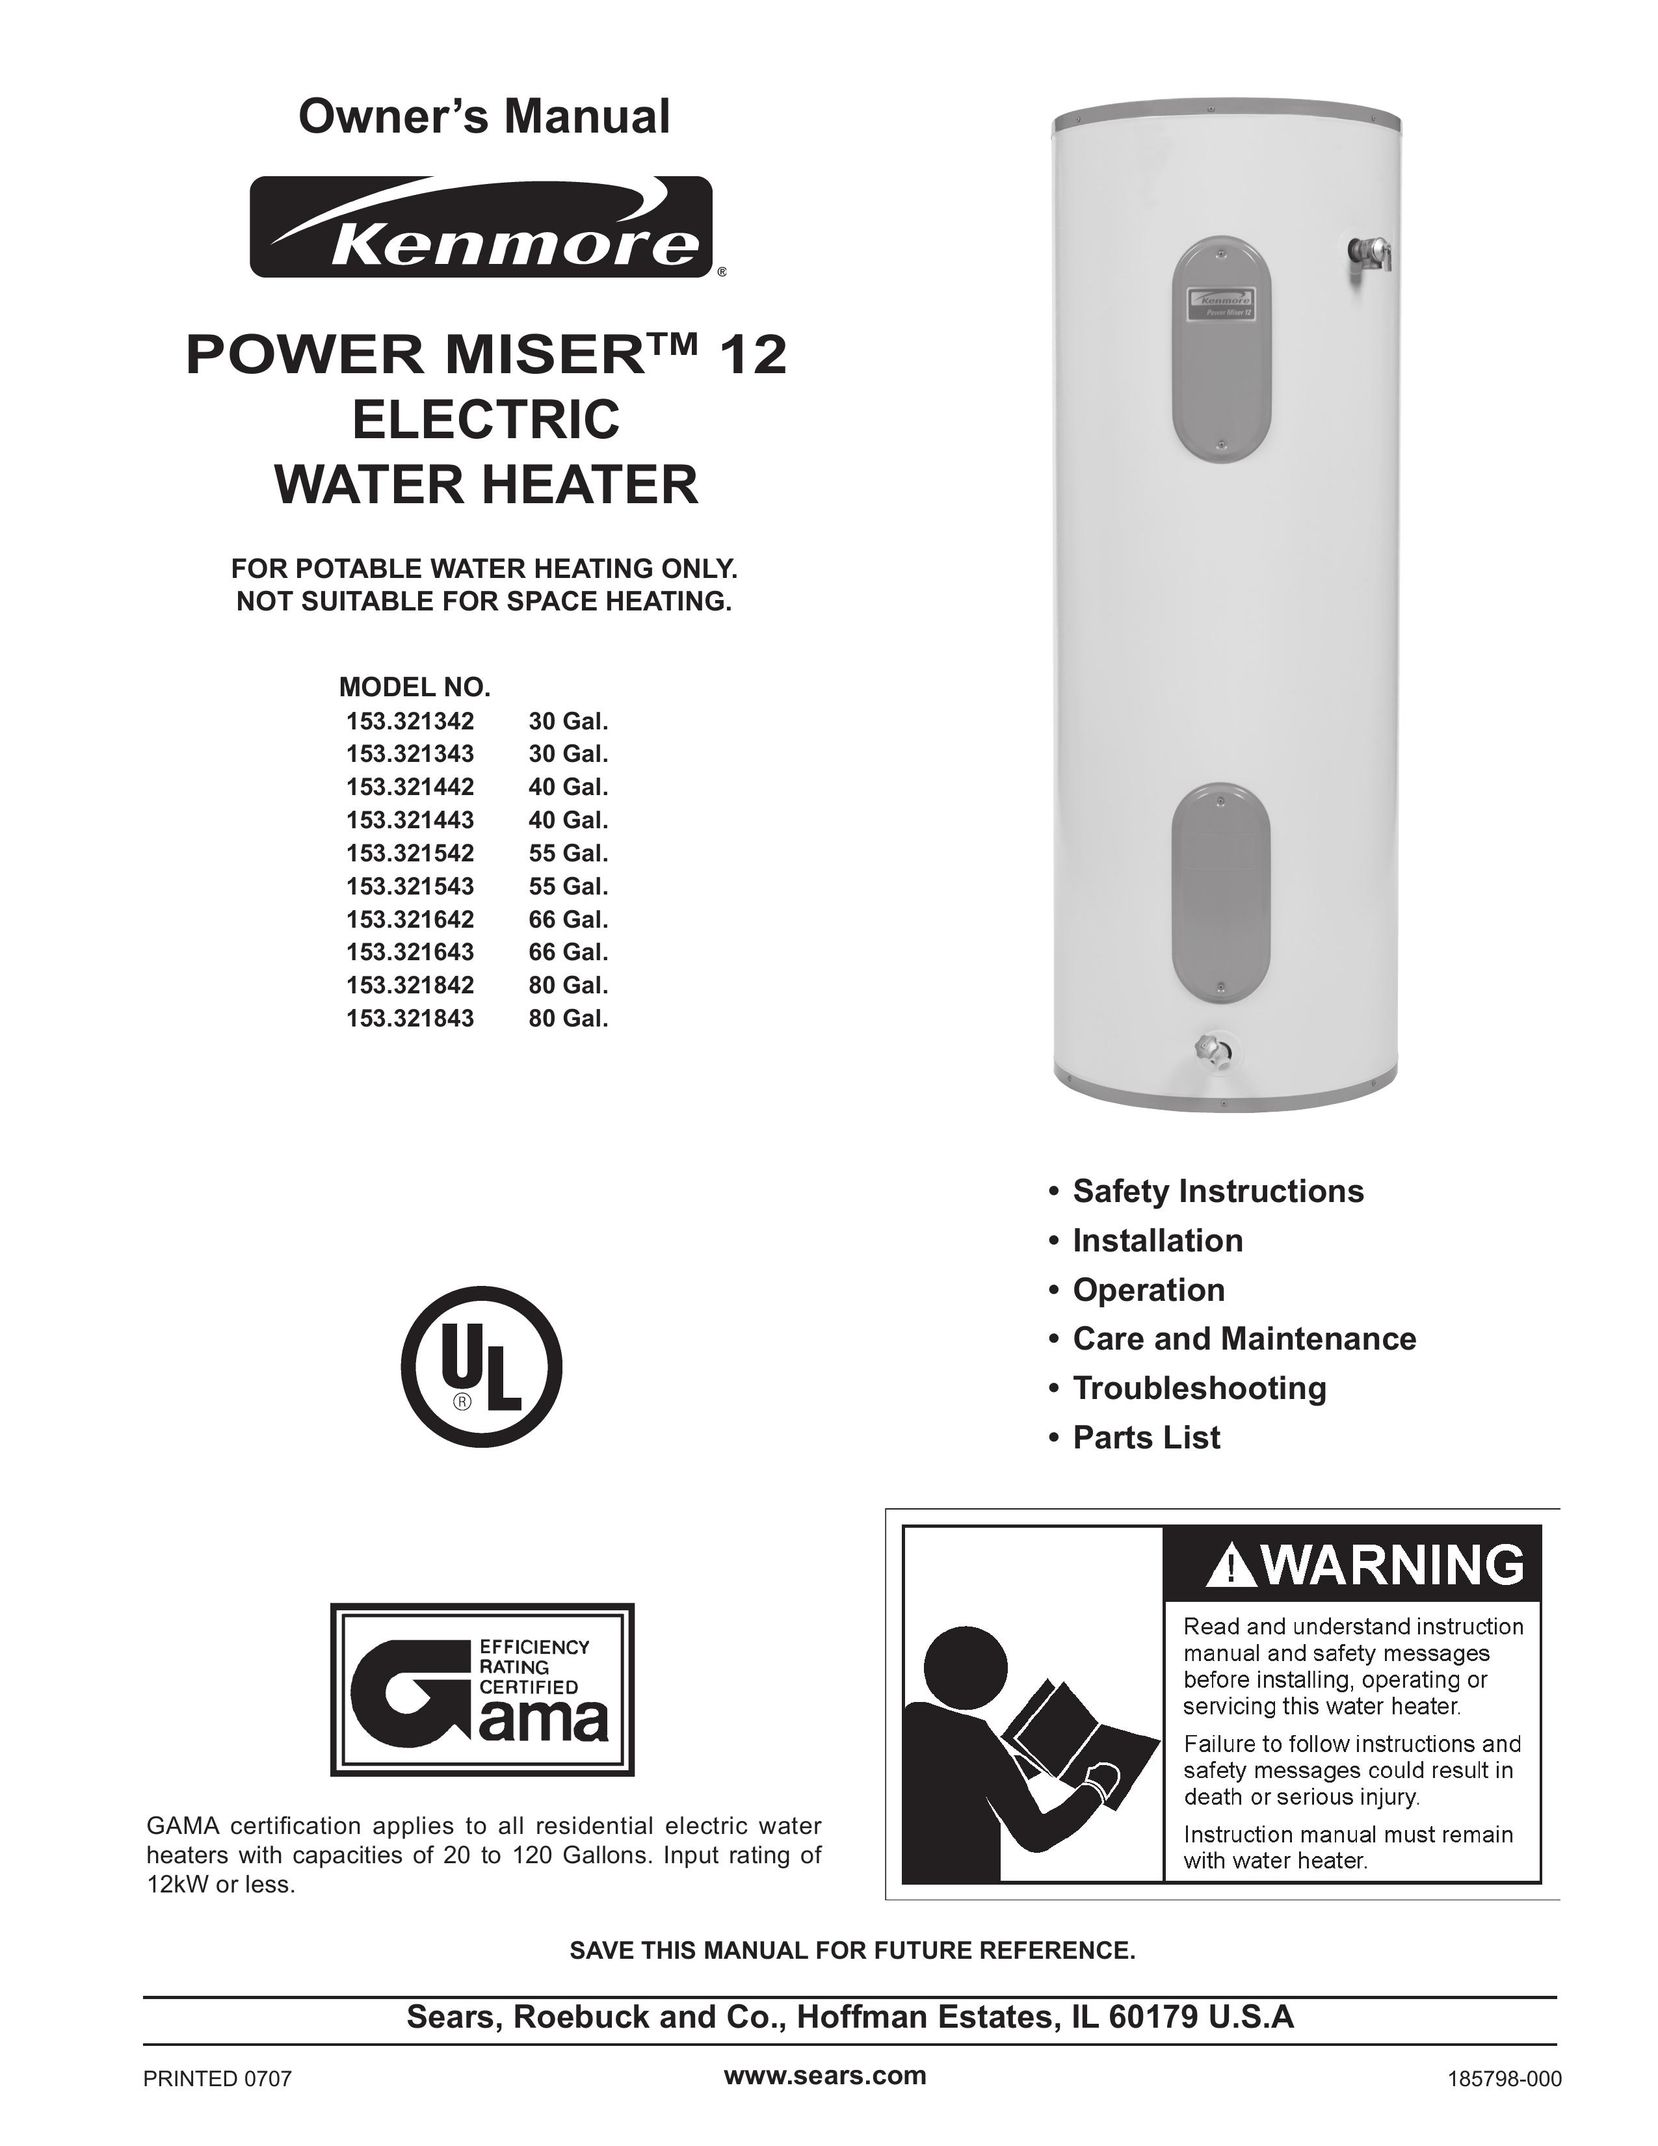 Sears 153.321642 Water Heater User Manual